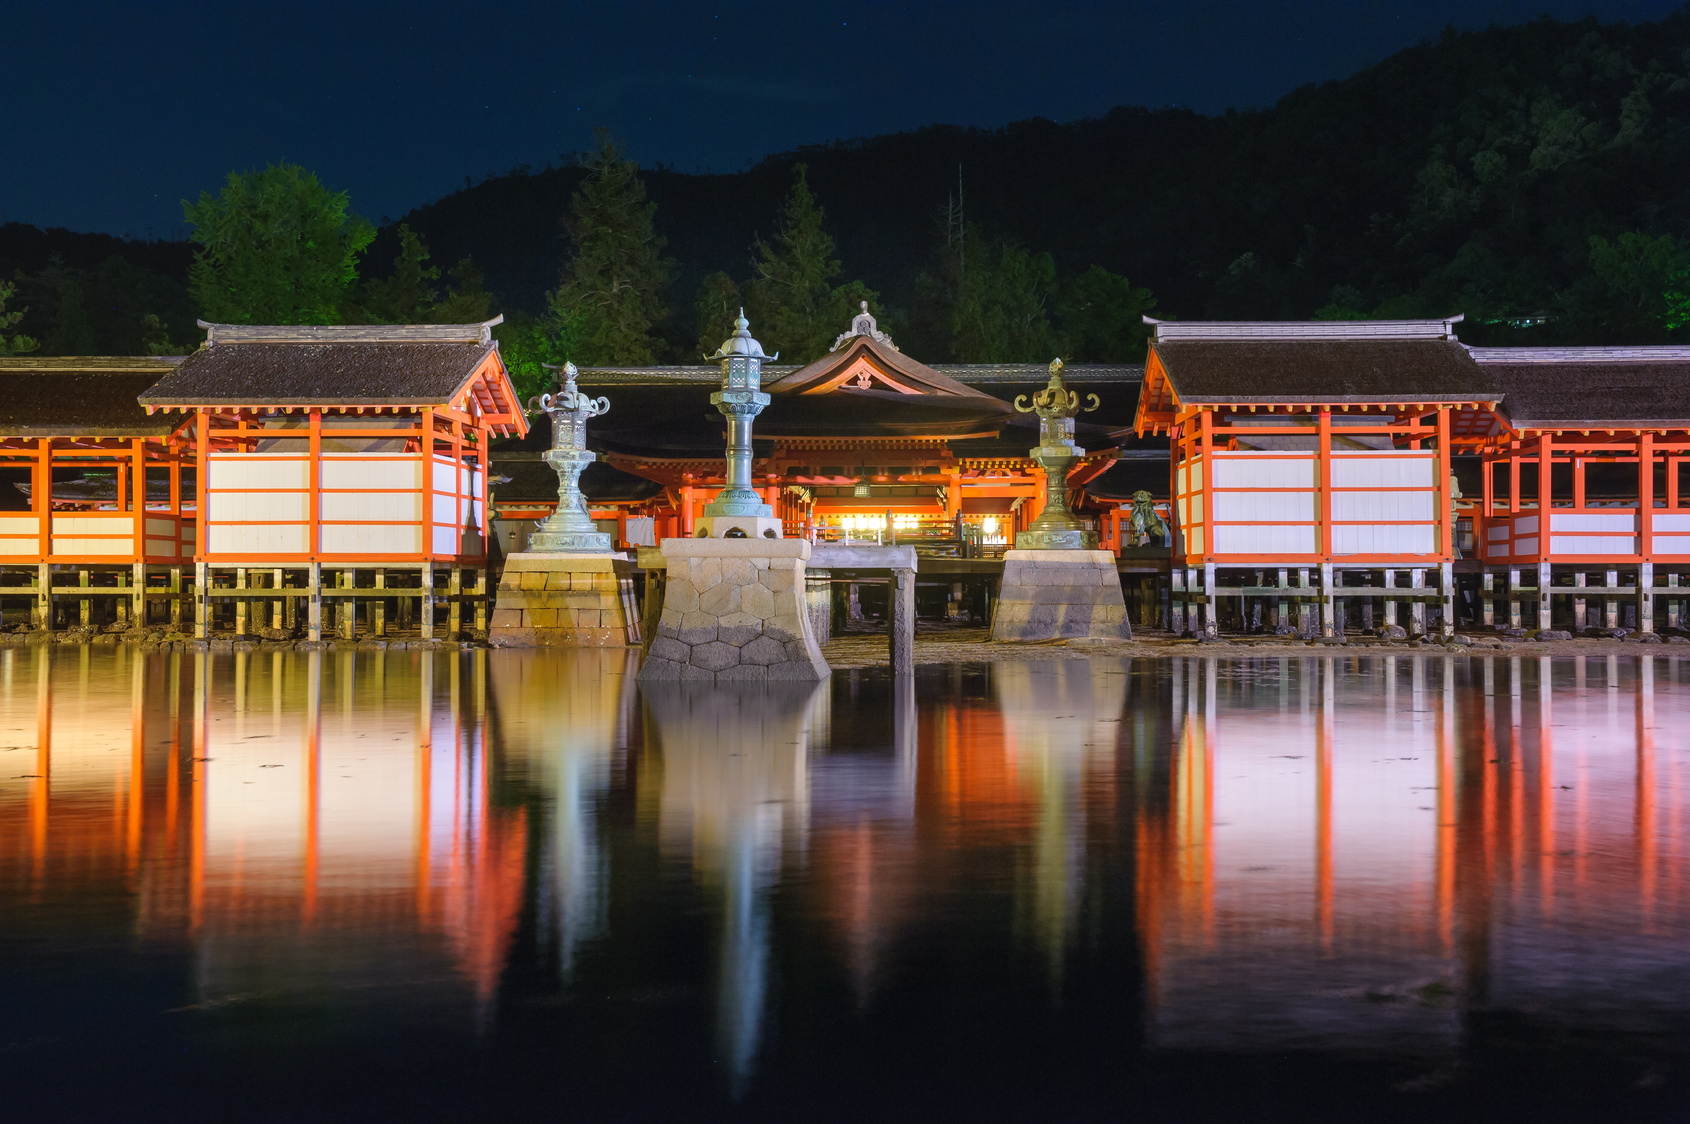 厳島神社 広島 宮島 世界文化遺産 水系パワースポット 開運舎